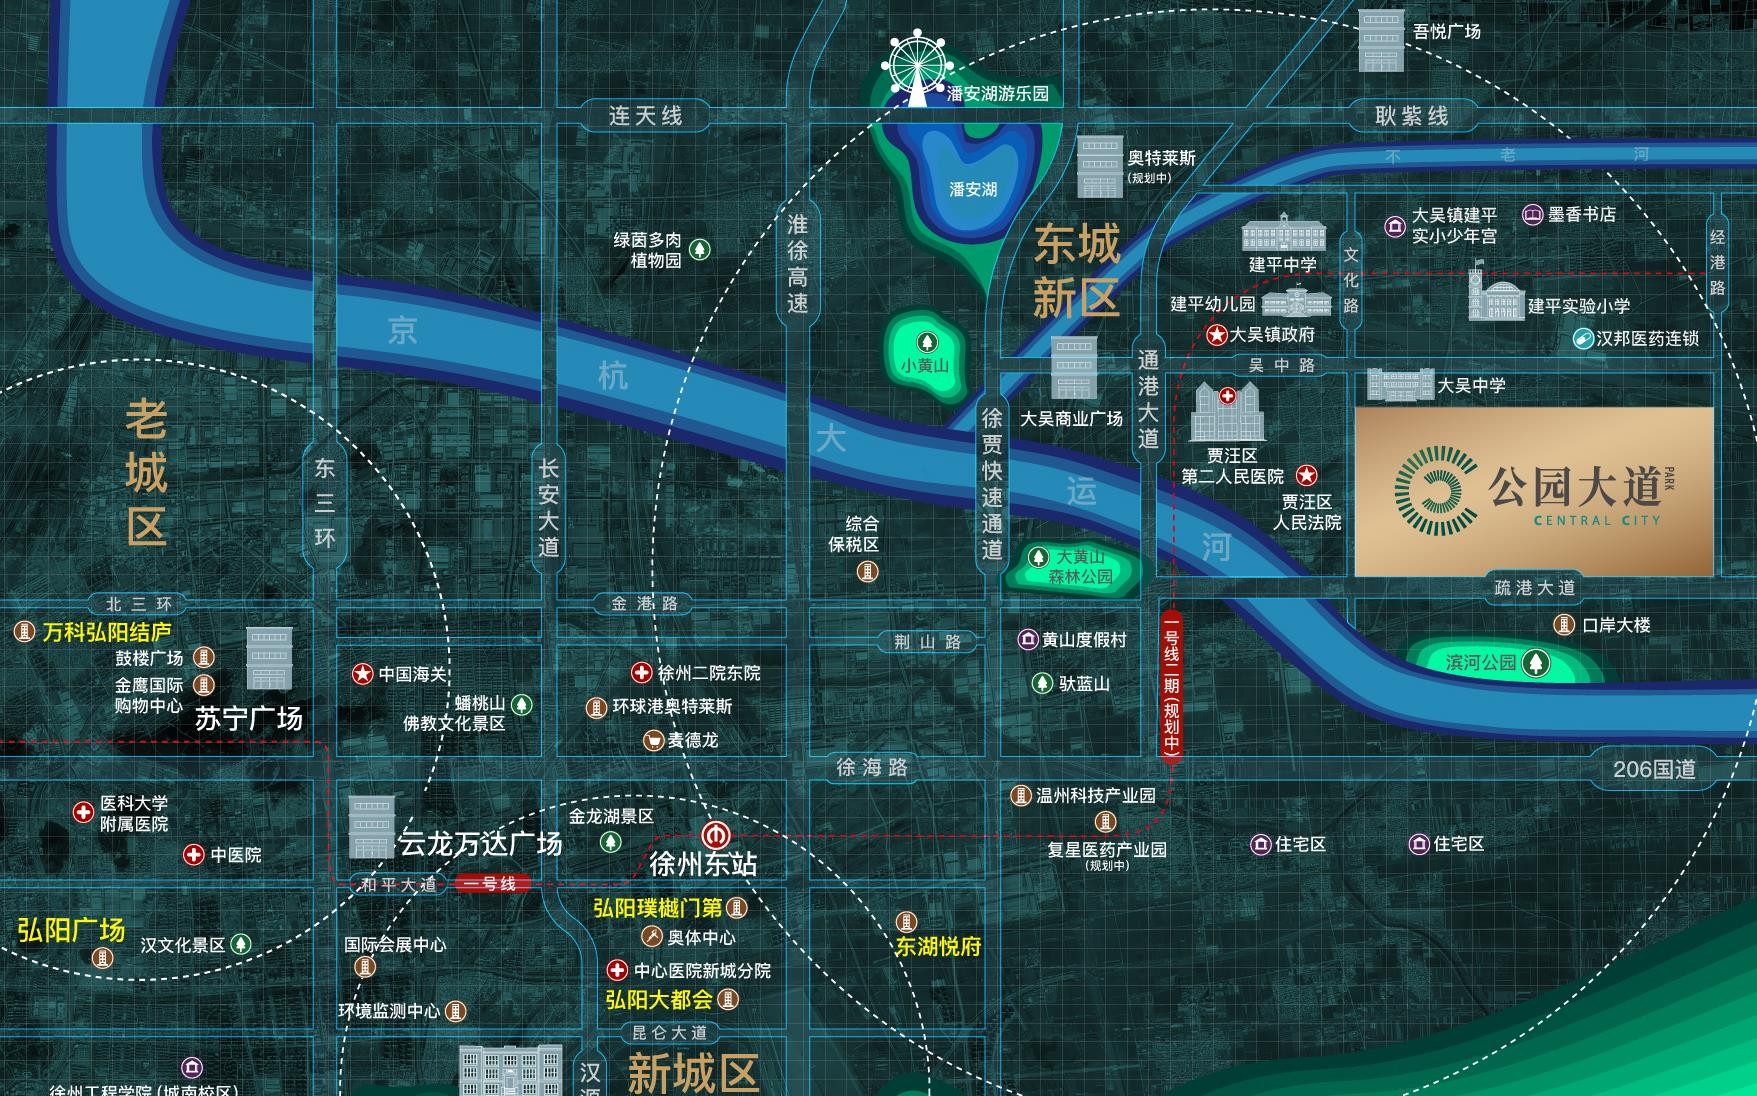 弘阳公园大道区位图